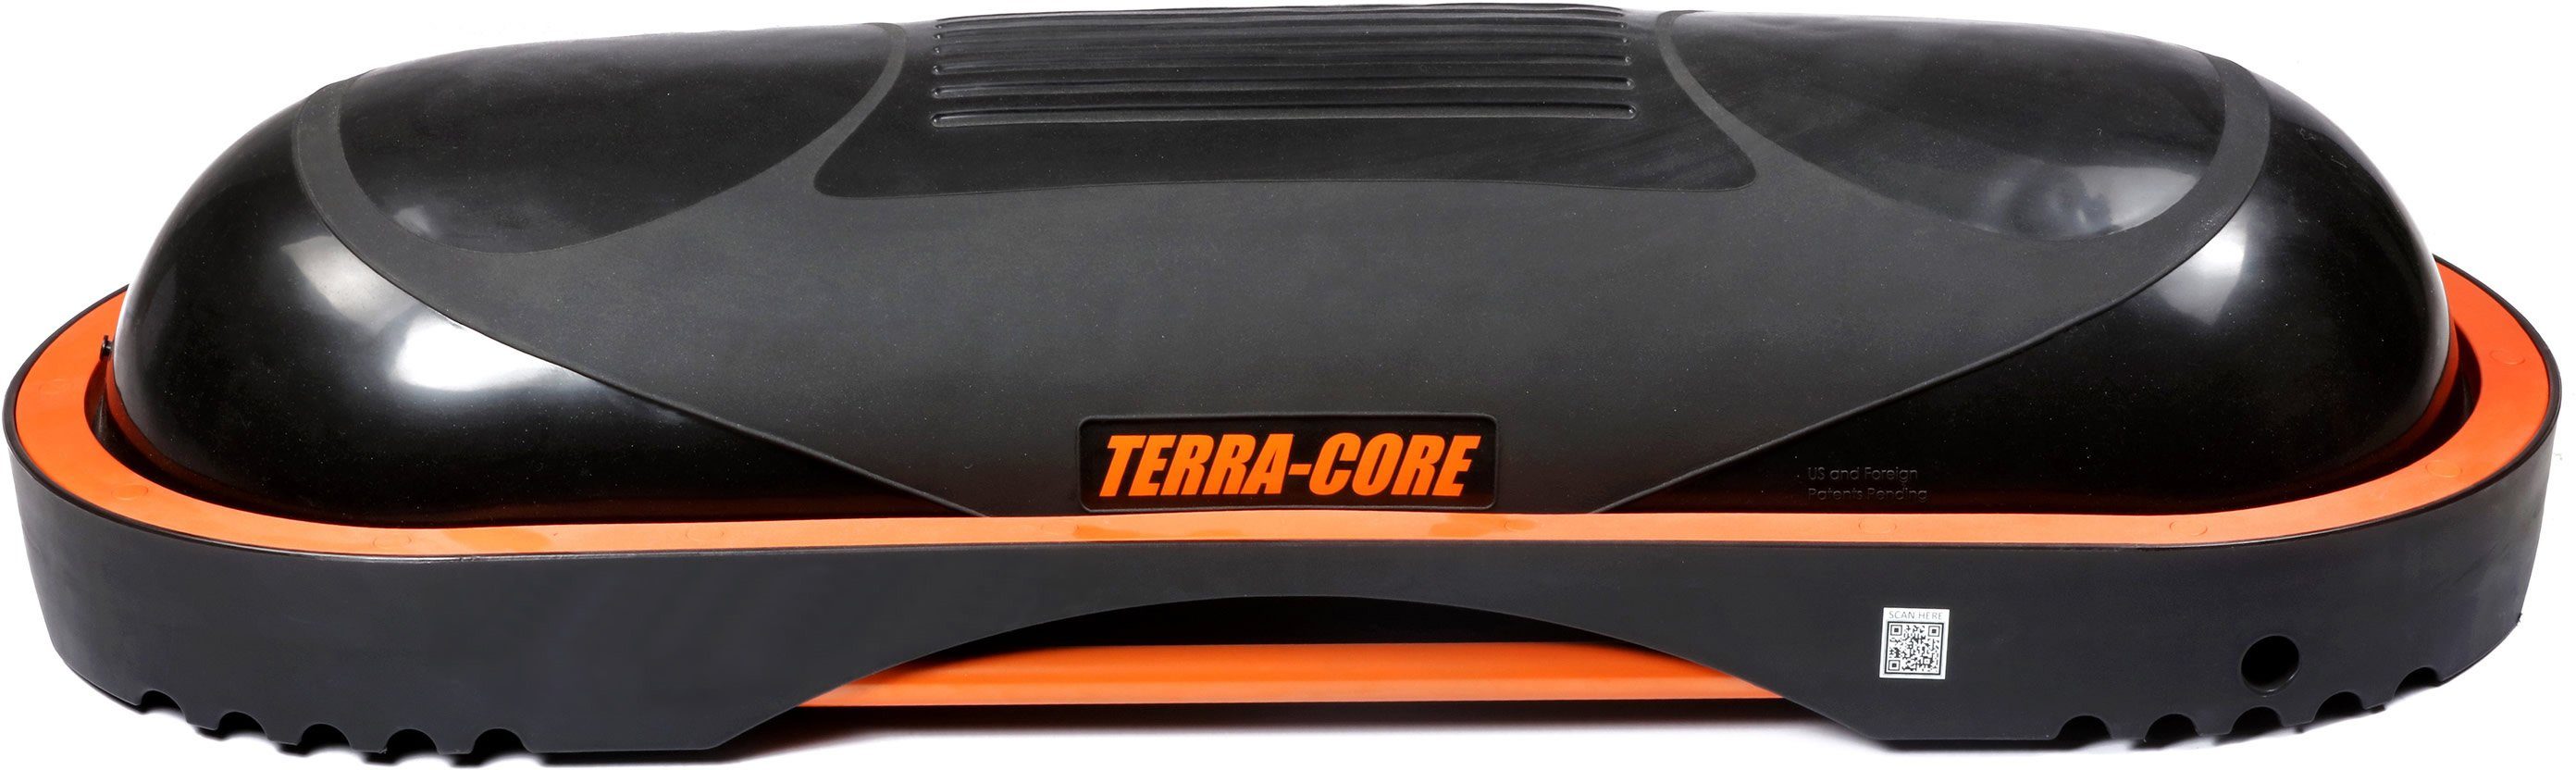 Universelle Stepp Terra Balance Workout Core, Balancetrainer Core und Terra Bench, Board